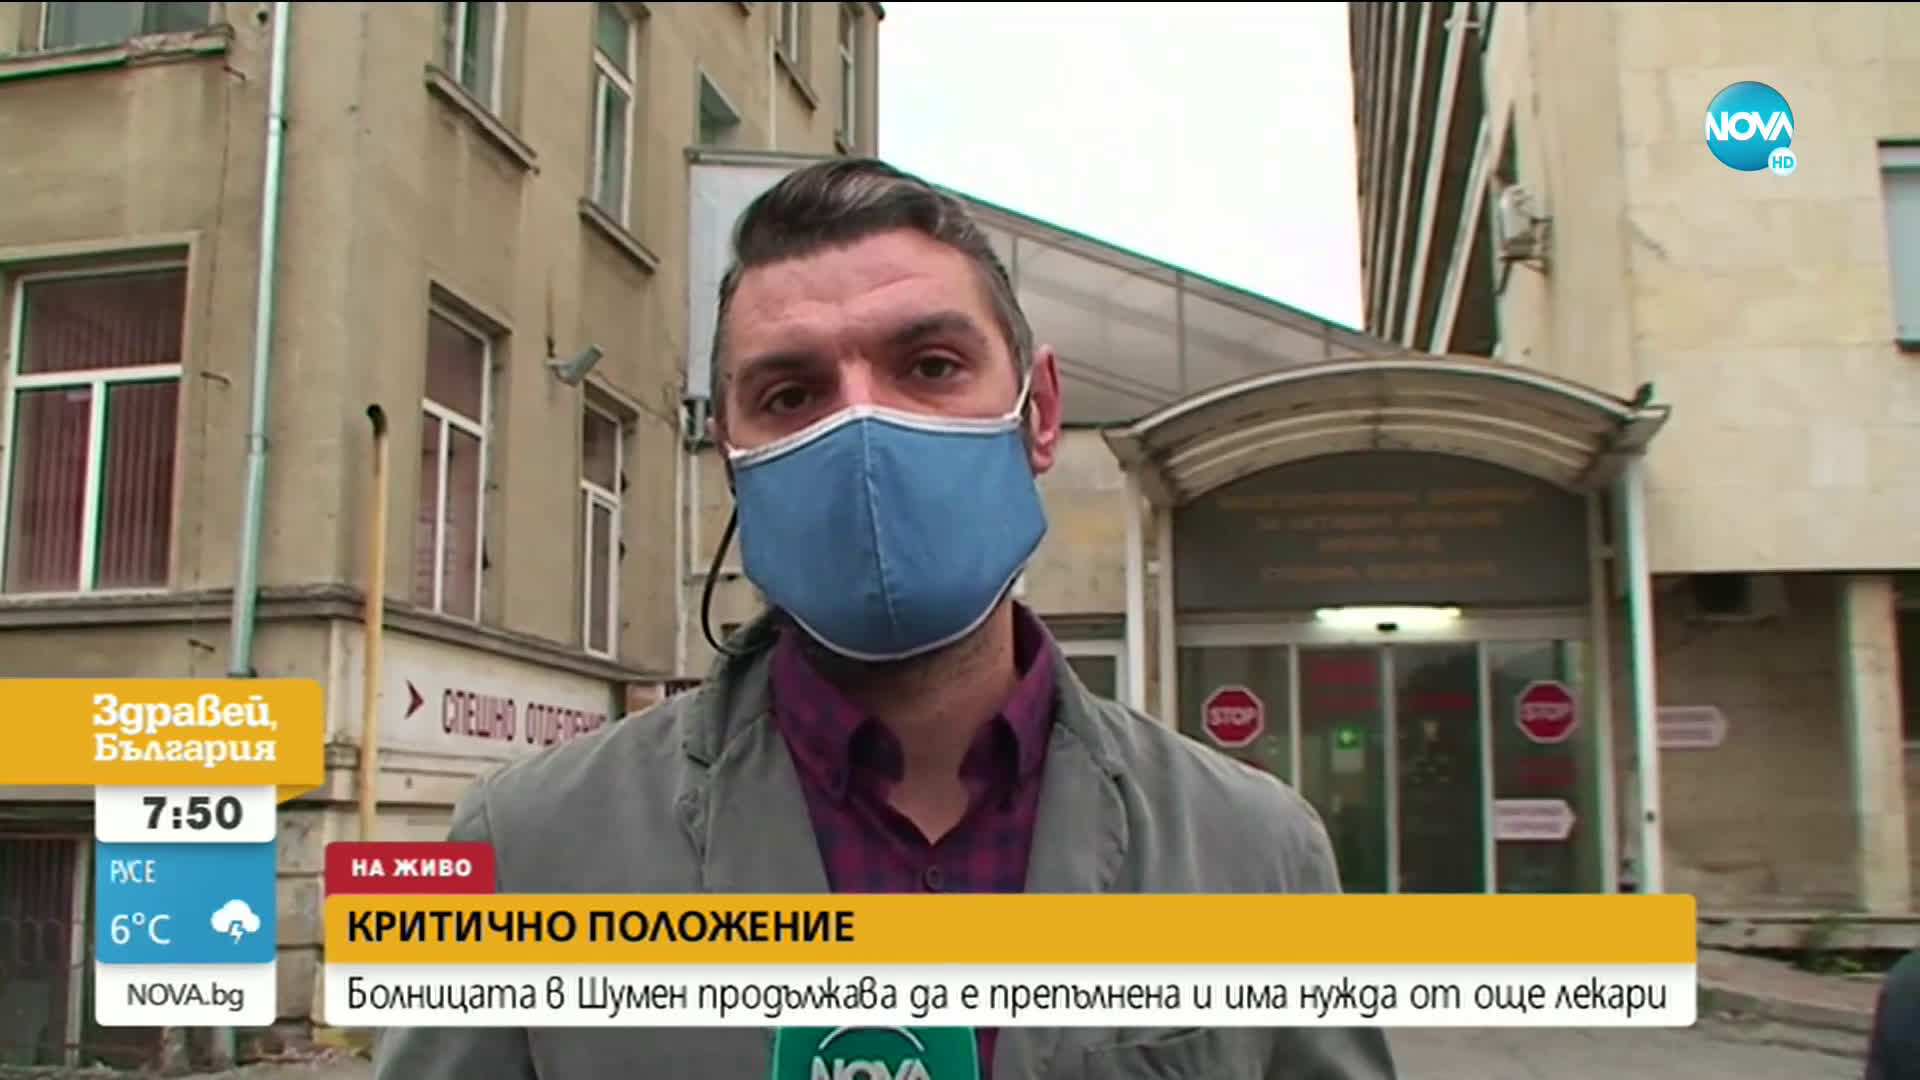 Болницата в Шумен продължава да е препълнена